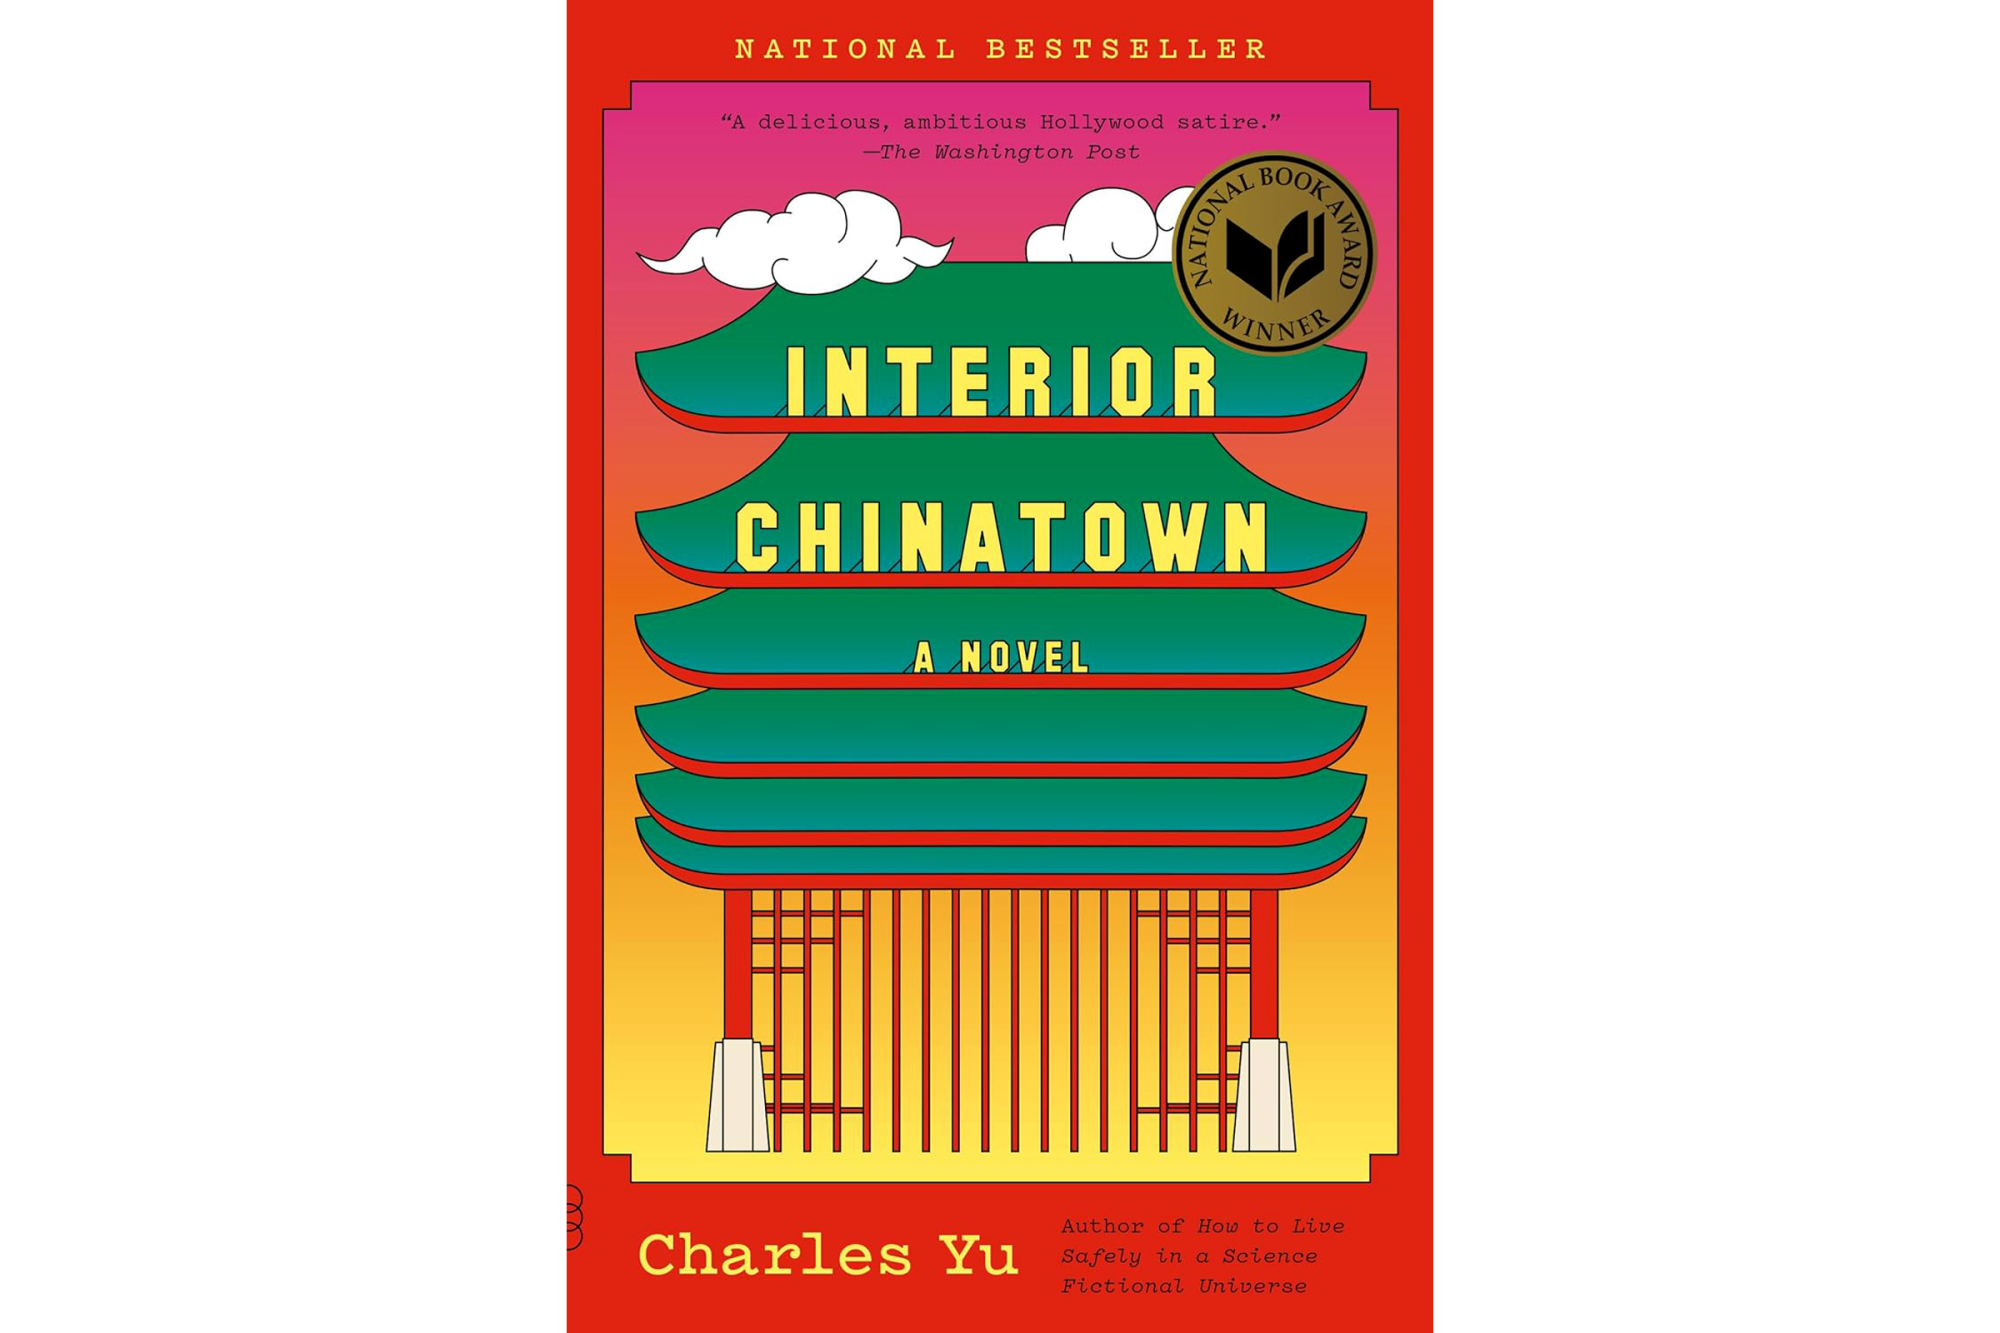 "Interior Chinatown" by Charles Yu